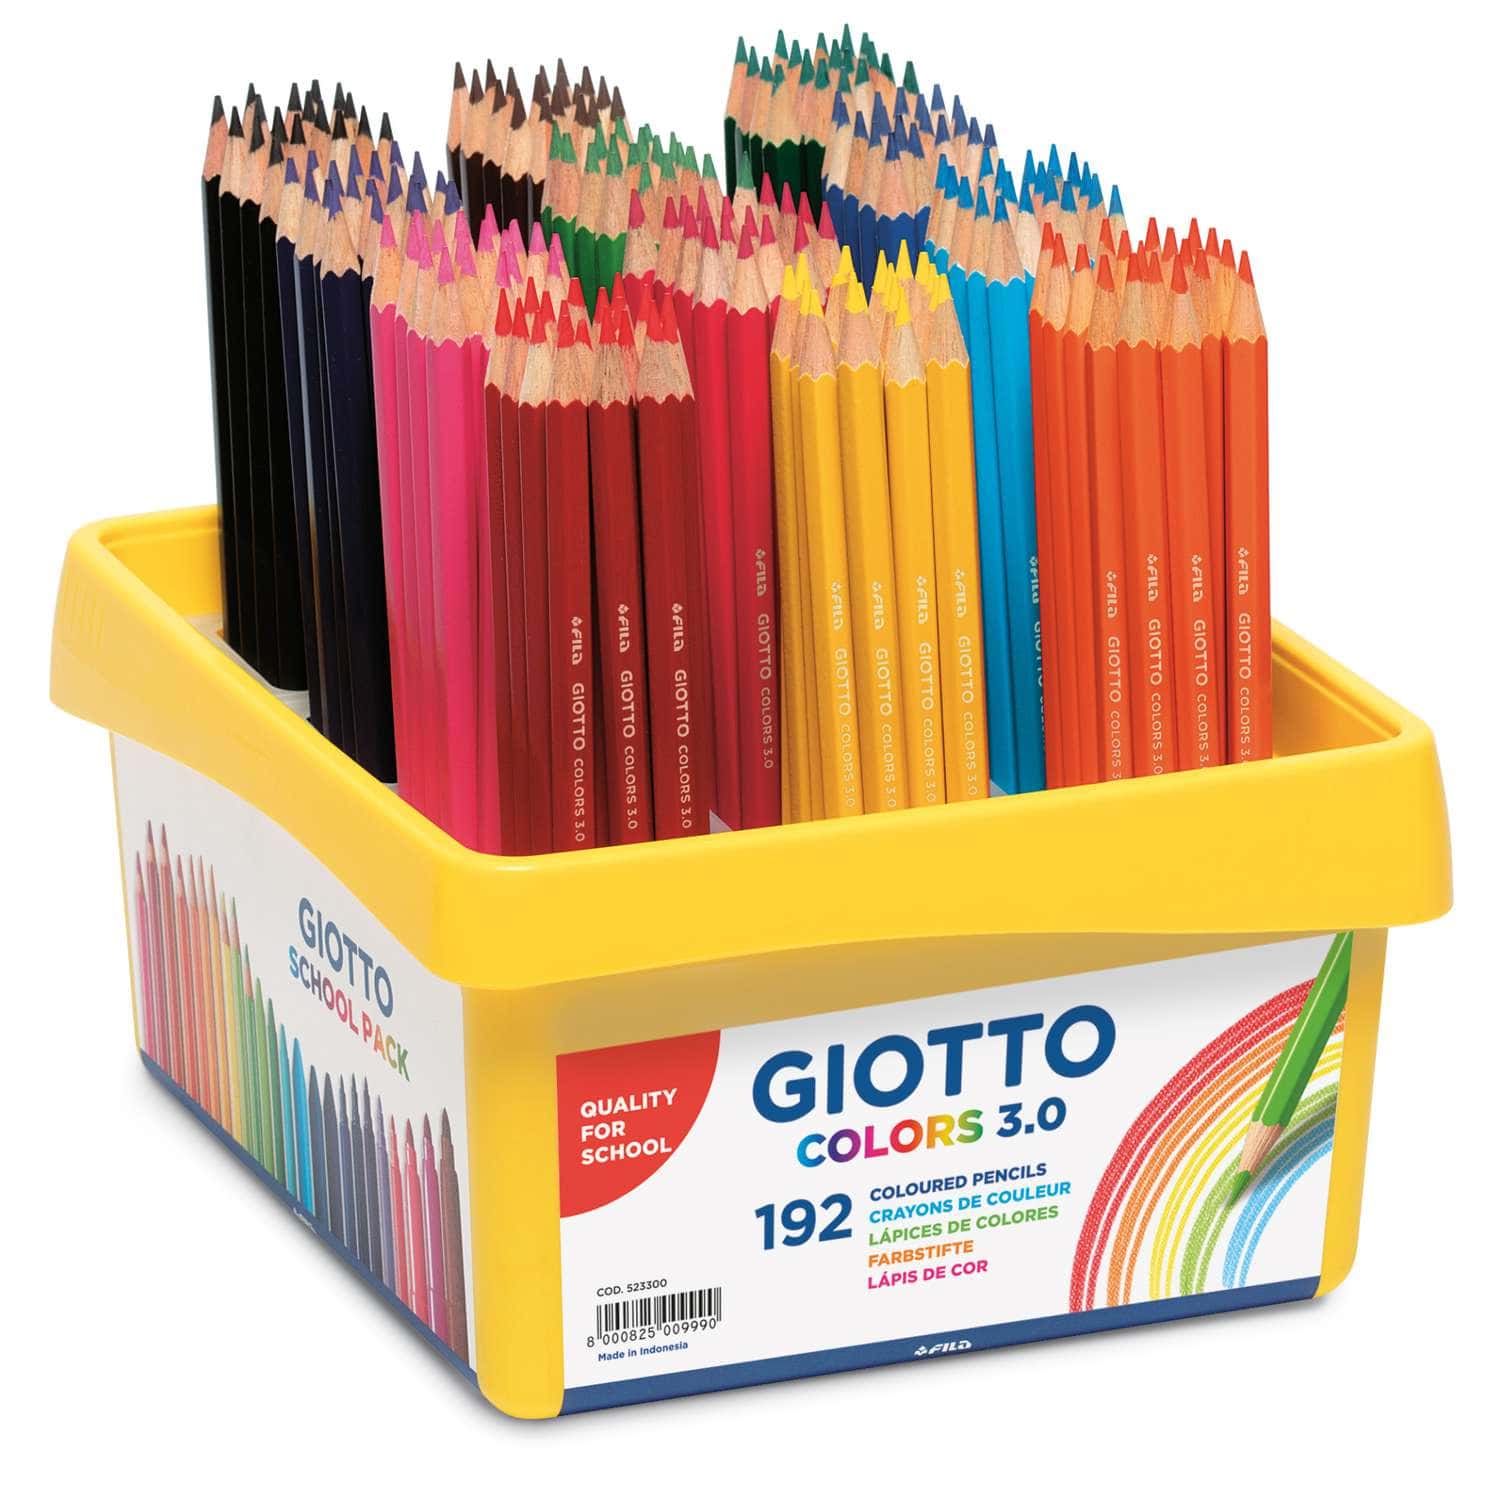 https://images.mondo-artista.it/out/pictures/generated/1500_1500/419268/Giotto+-+Colors+3.0%2C+Set+da+192+matite+colorate+per+la+scuola.jpg